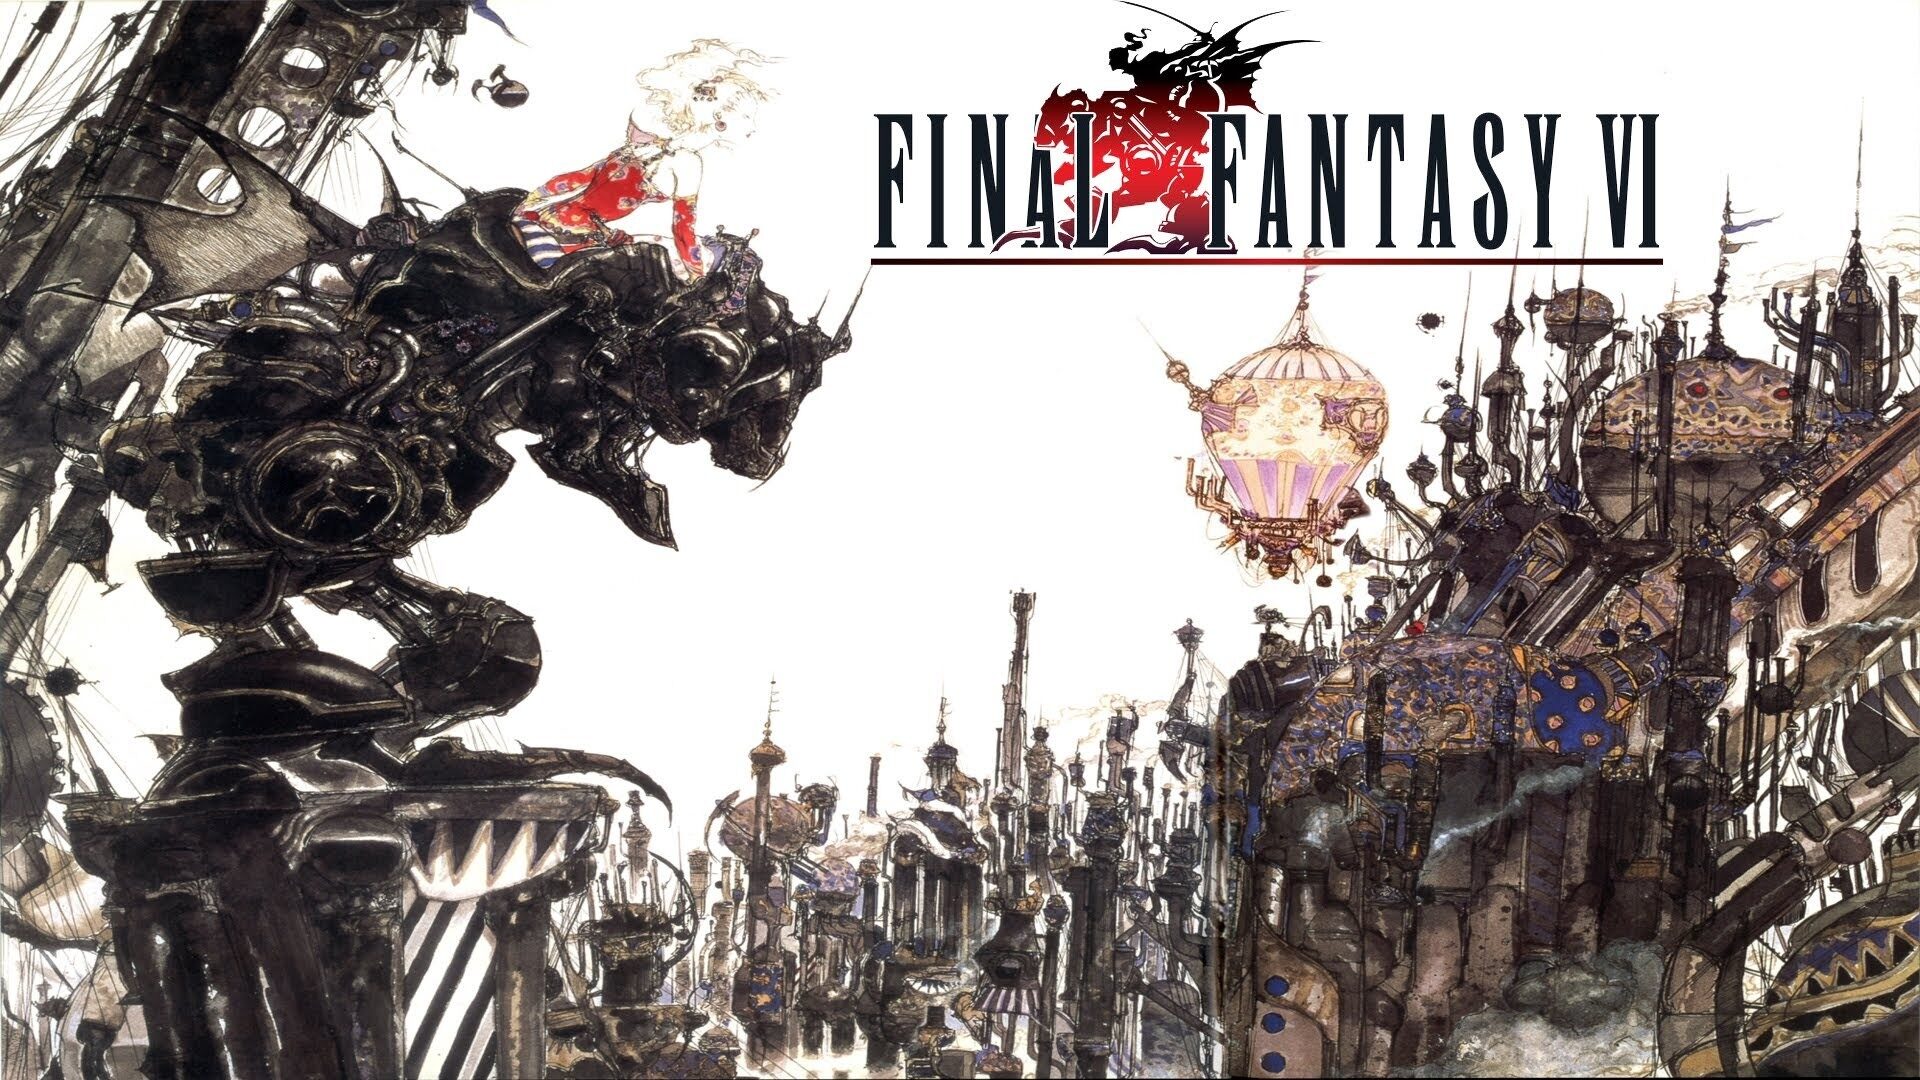 Final Fantasy VI: Rinascita Digitale Grazie all’Intelligenza Artificiale